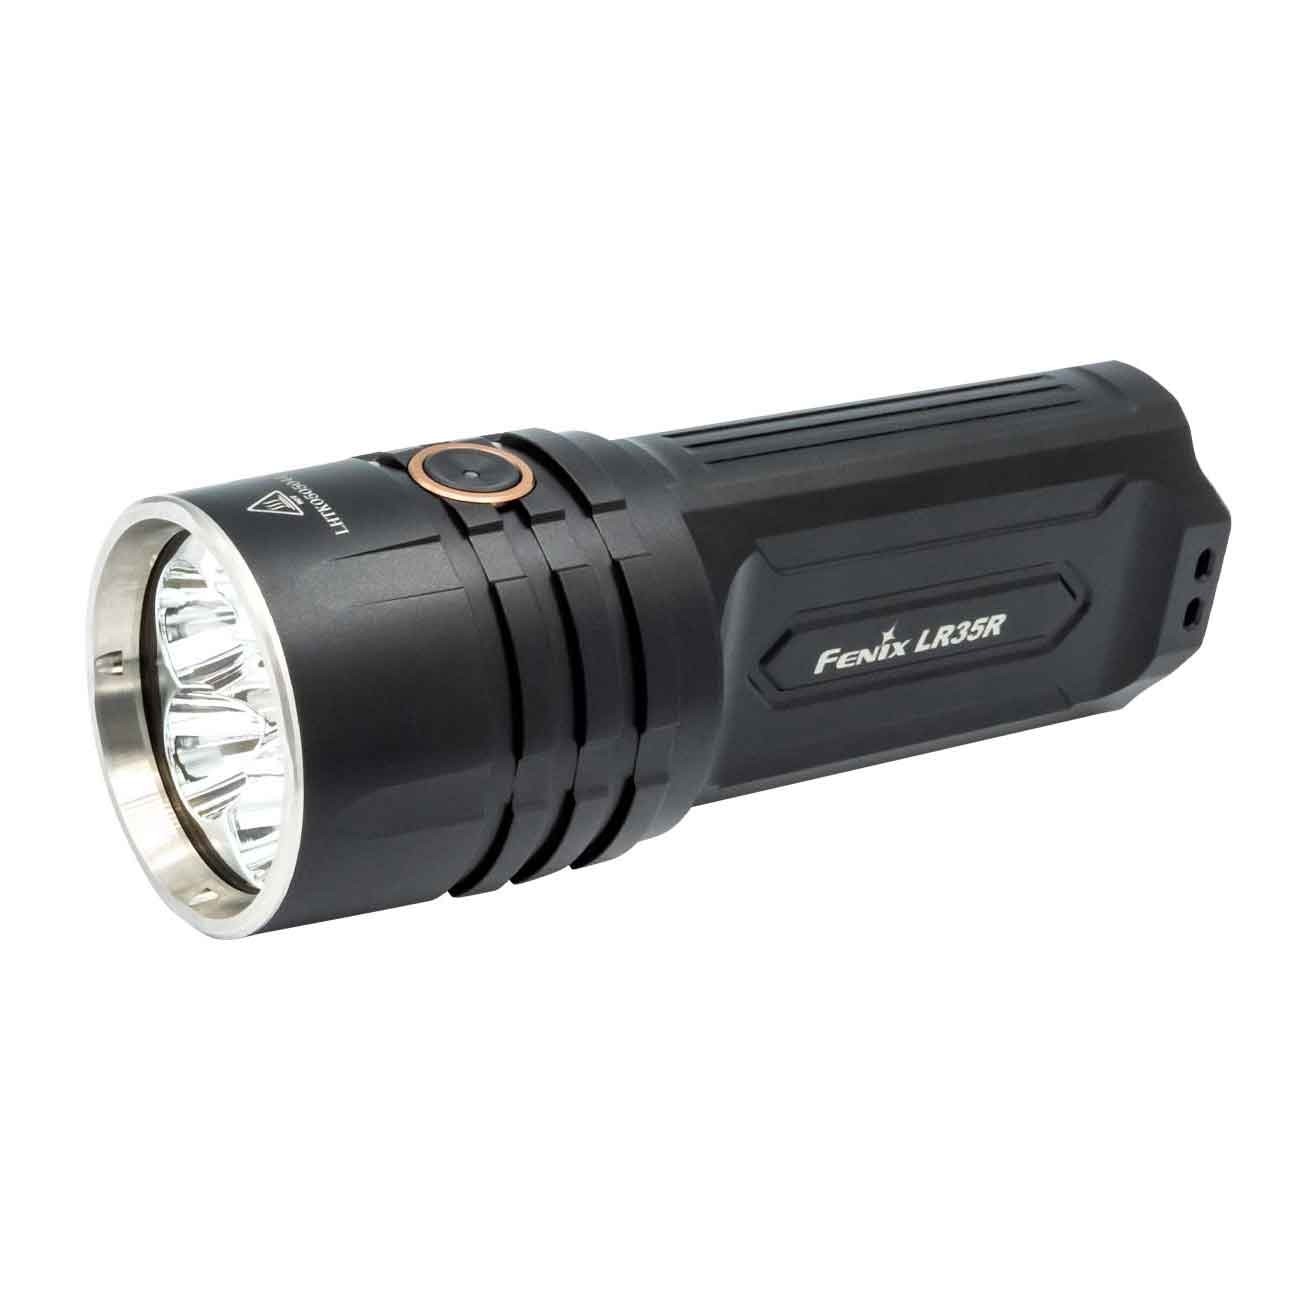 Fenix LR35R Compact USB-C Rechargeable 10000 Lumen Searchlight